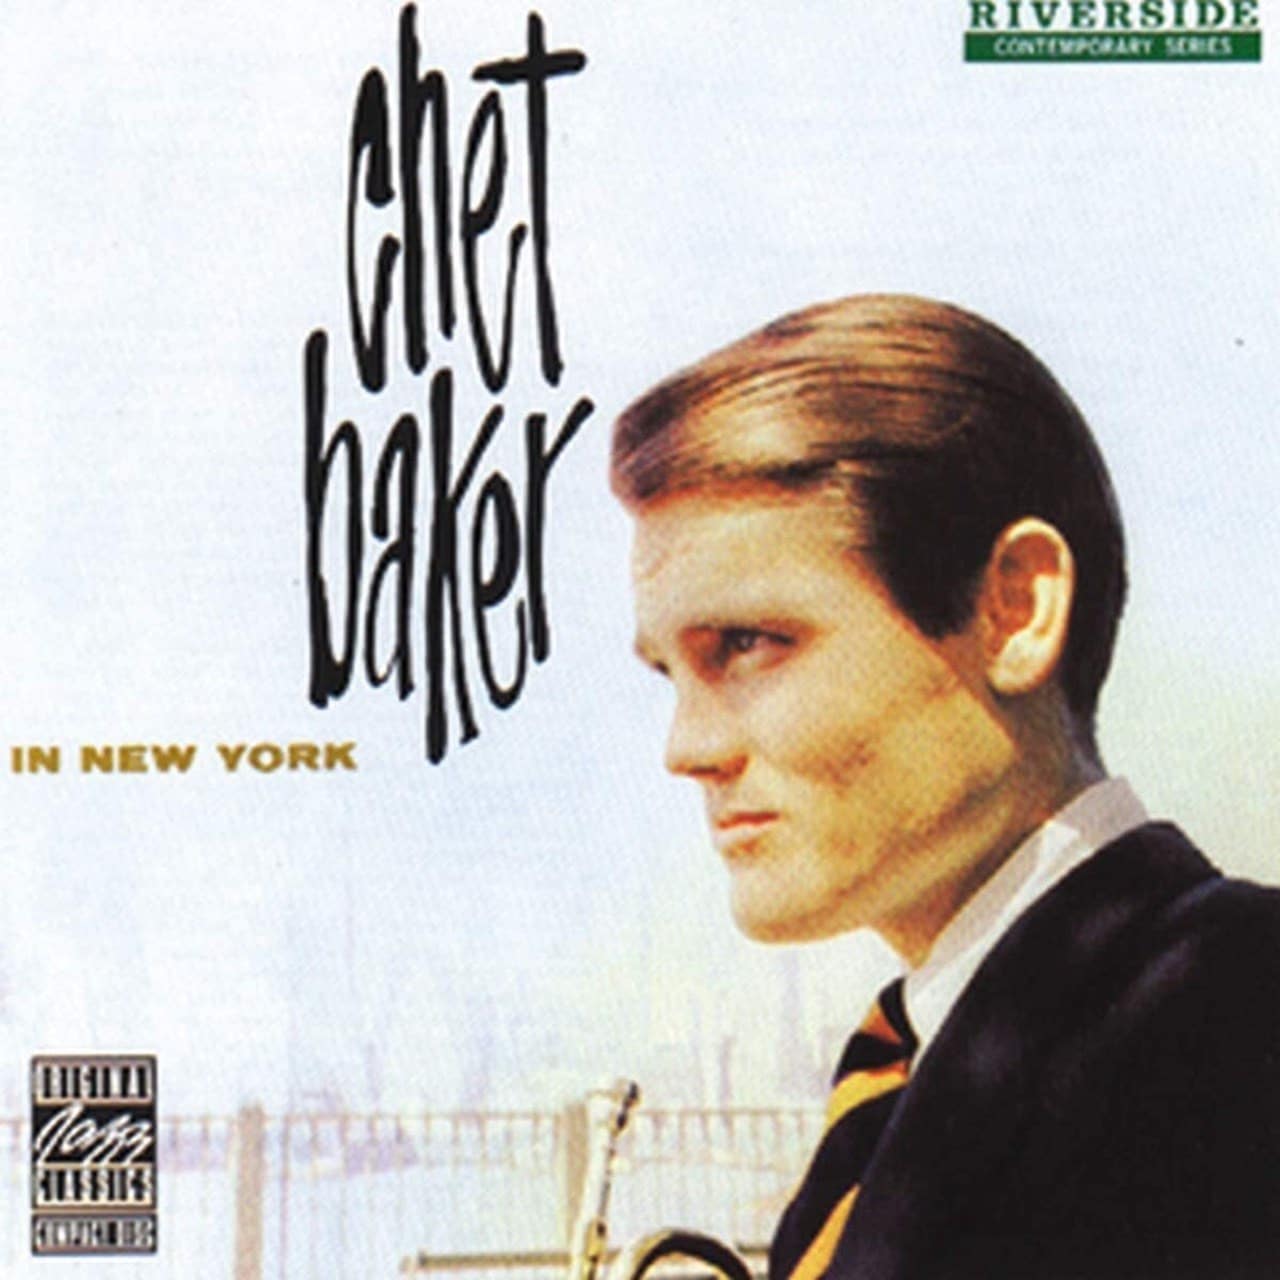 Chet Baker - In New York